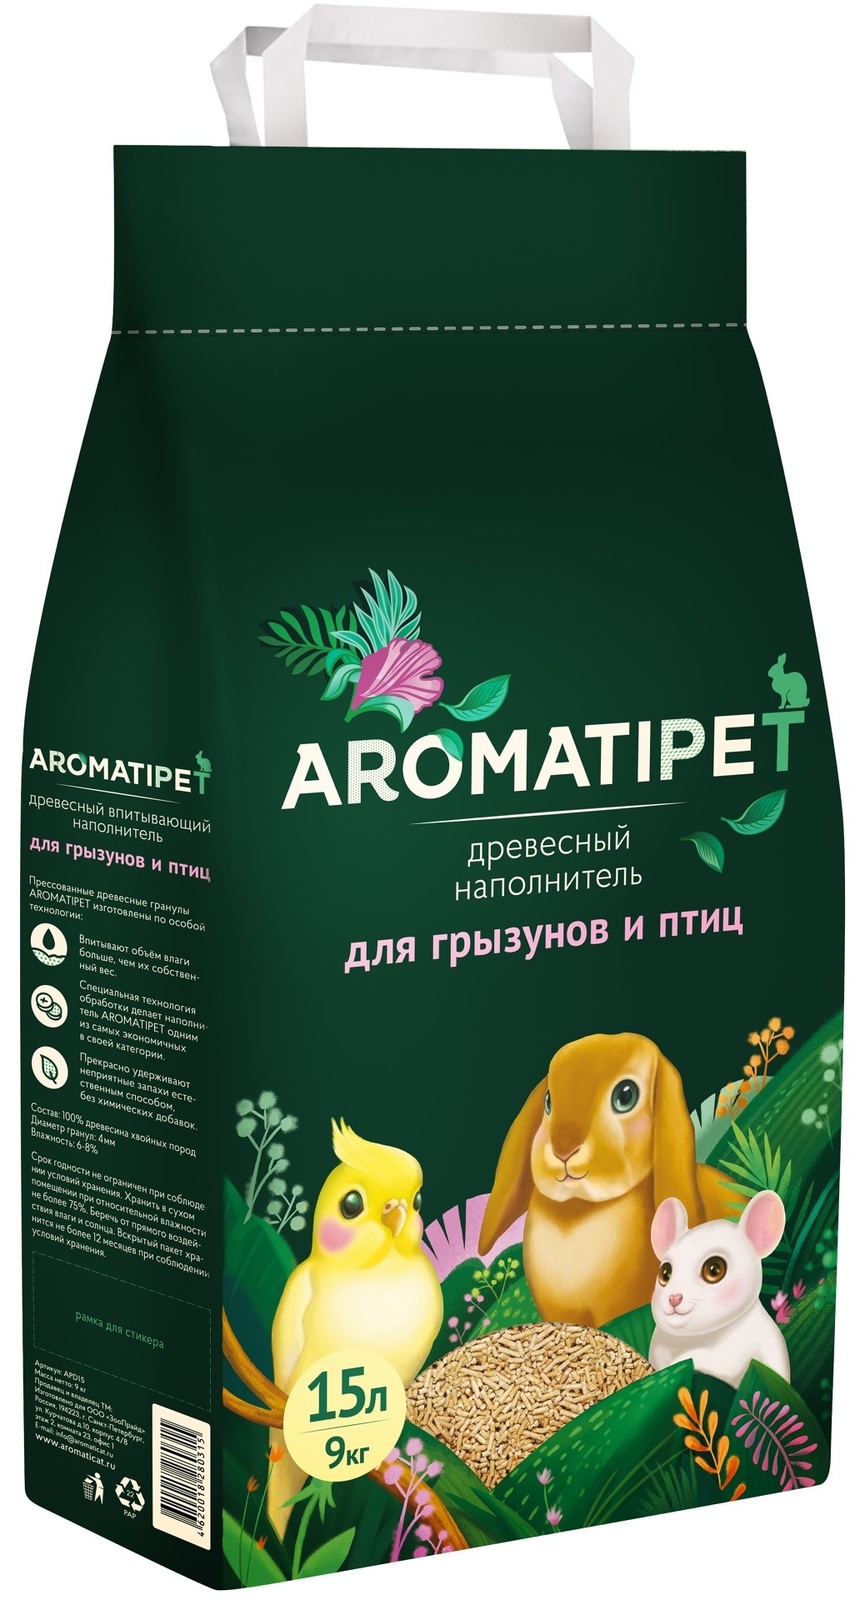 AromatiPet AromatiPet древесный наполнитель для грызунов и птиц (1,5 кг) древесный наполнитель aromatipet для грызунов и птиц 15л